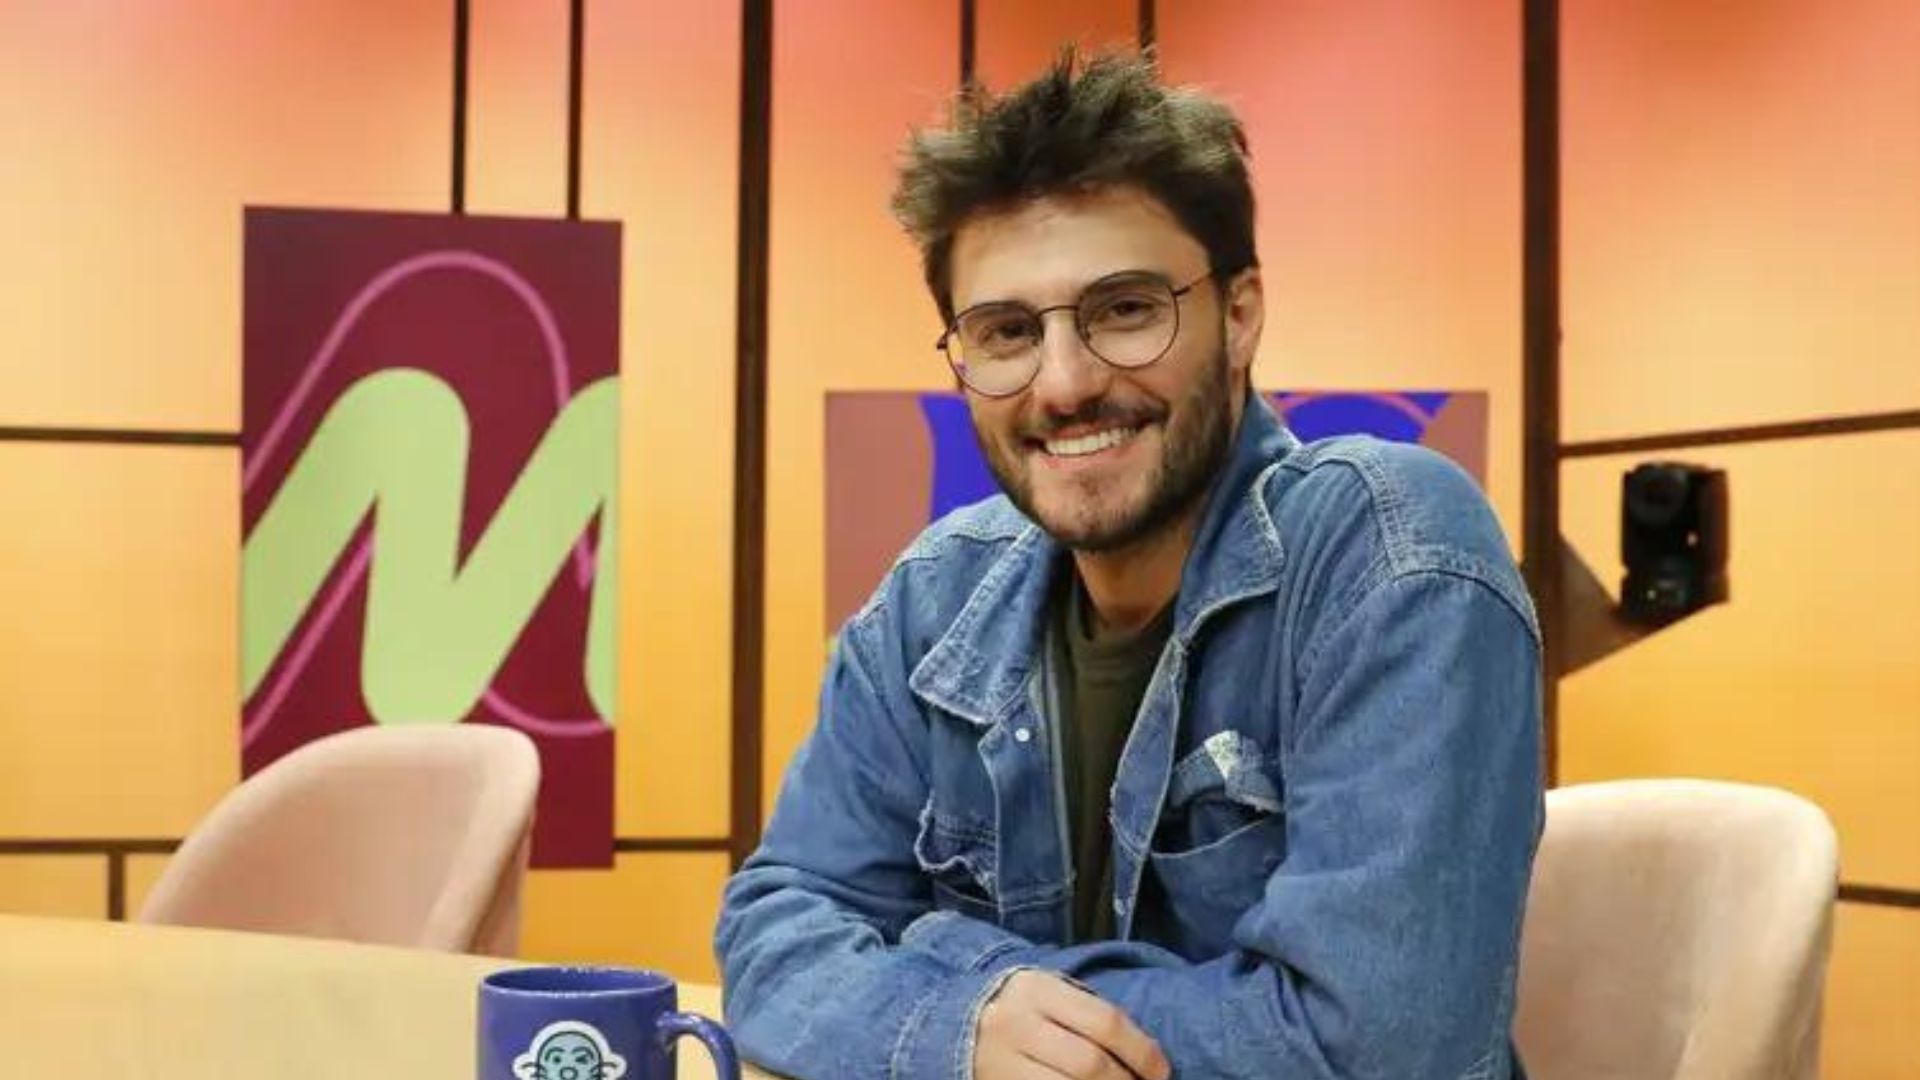 Quem será? Ator famoso ganha programa na TV Brasil e pega público de surpresa - Metropolitana FM